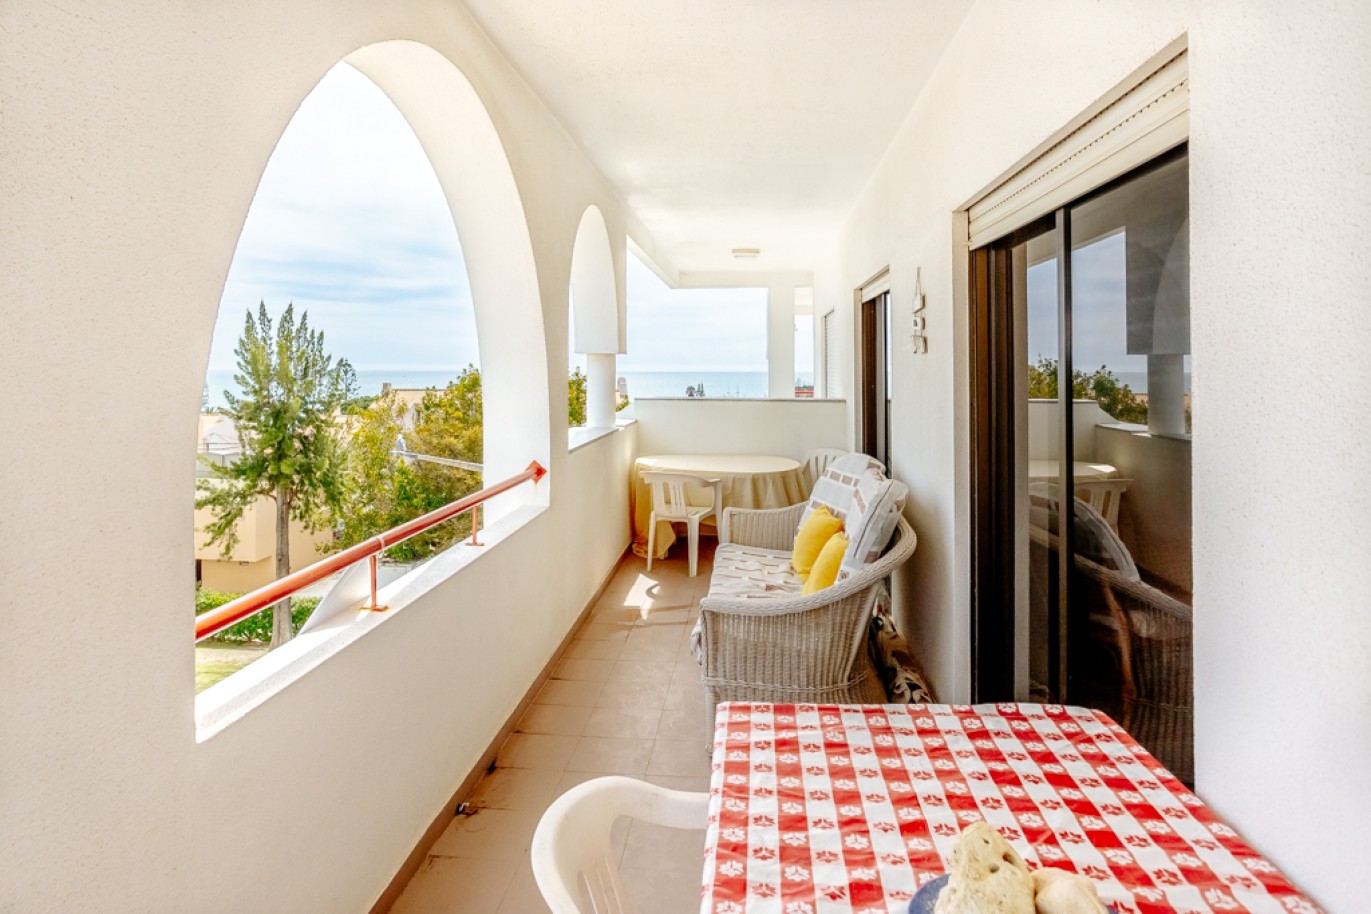 Apartamento com 1+1 quartos, com vista mar, para venda em Porches, Algarve_257027